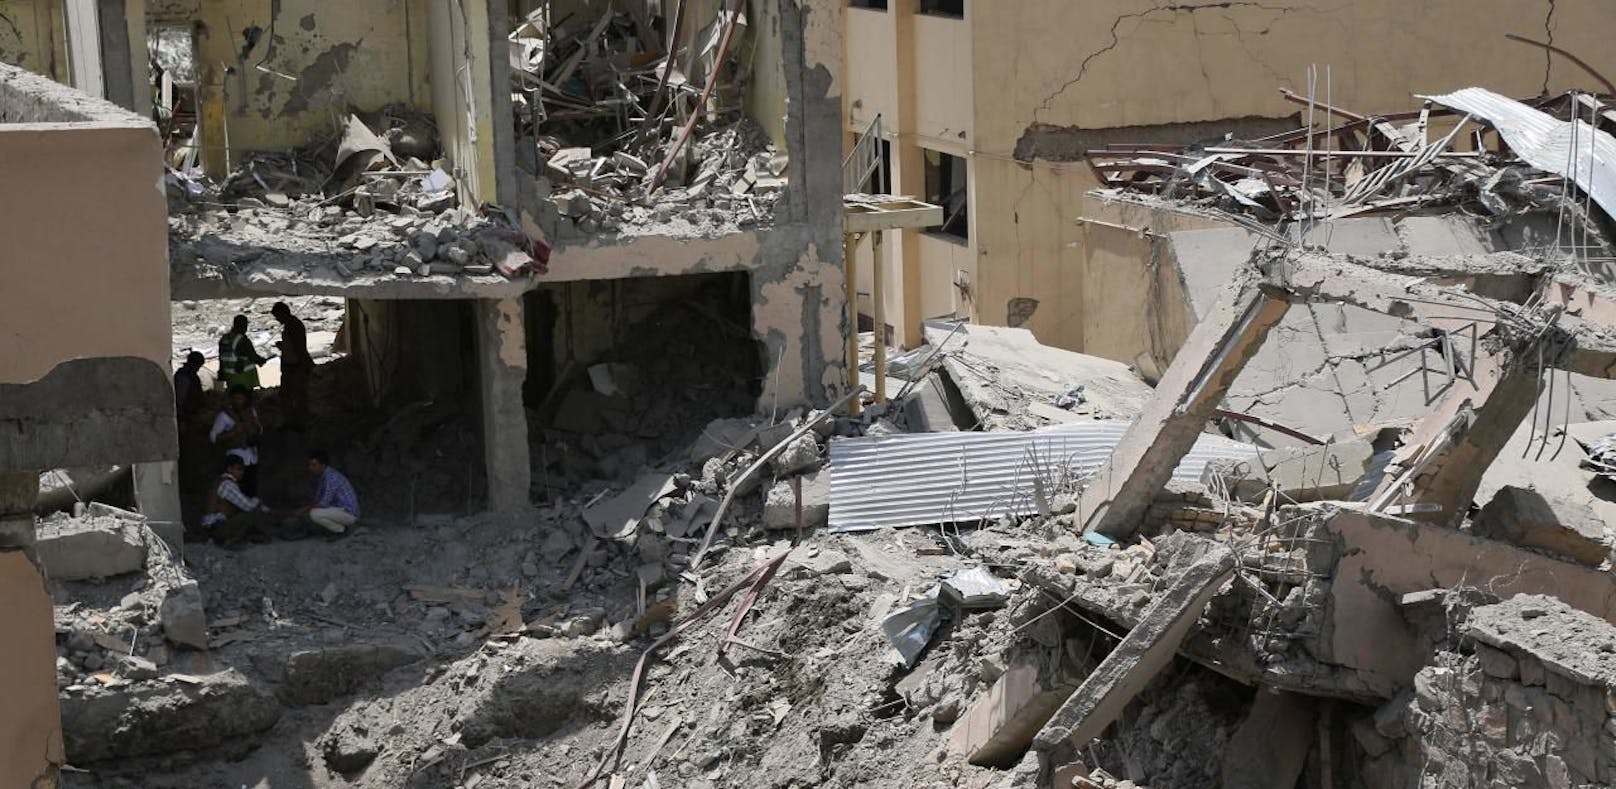 14 Tote und 145 Verletzte durch Anschlag in Kabul